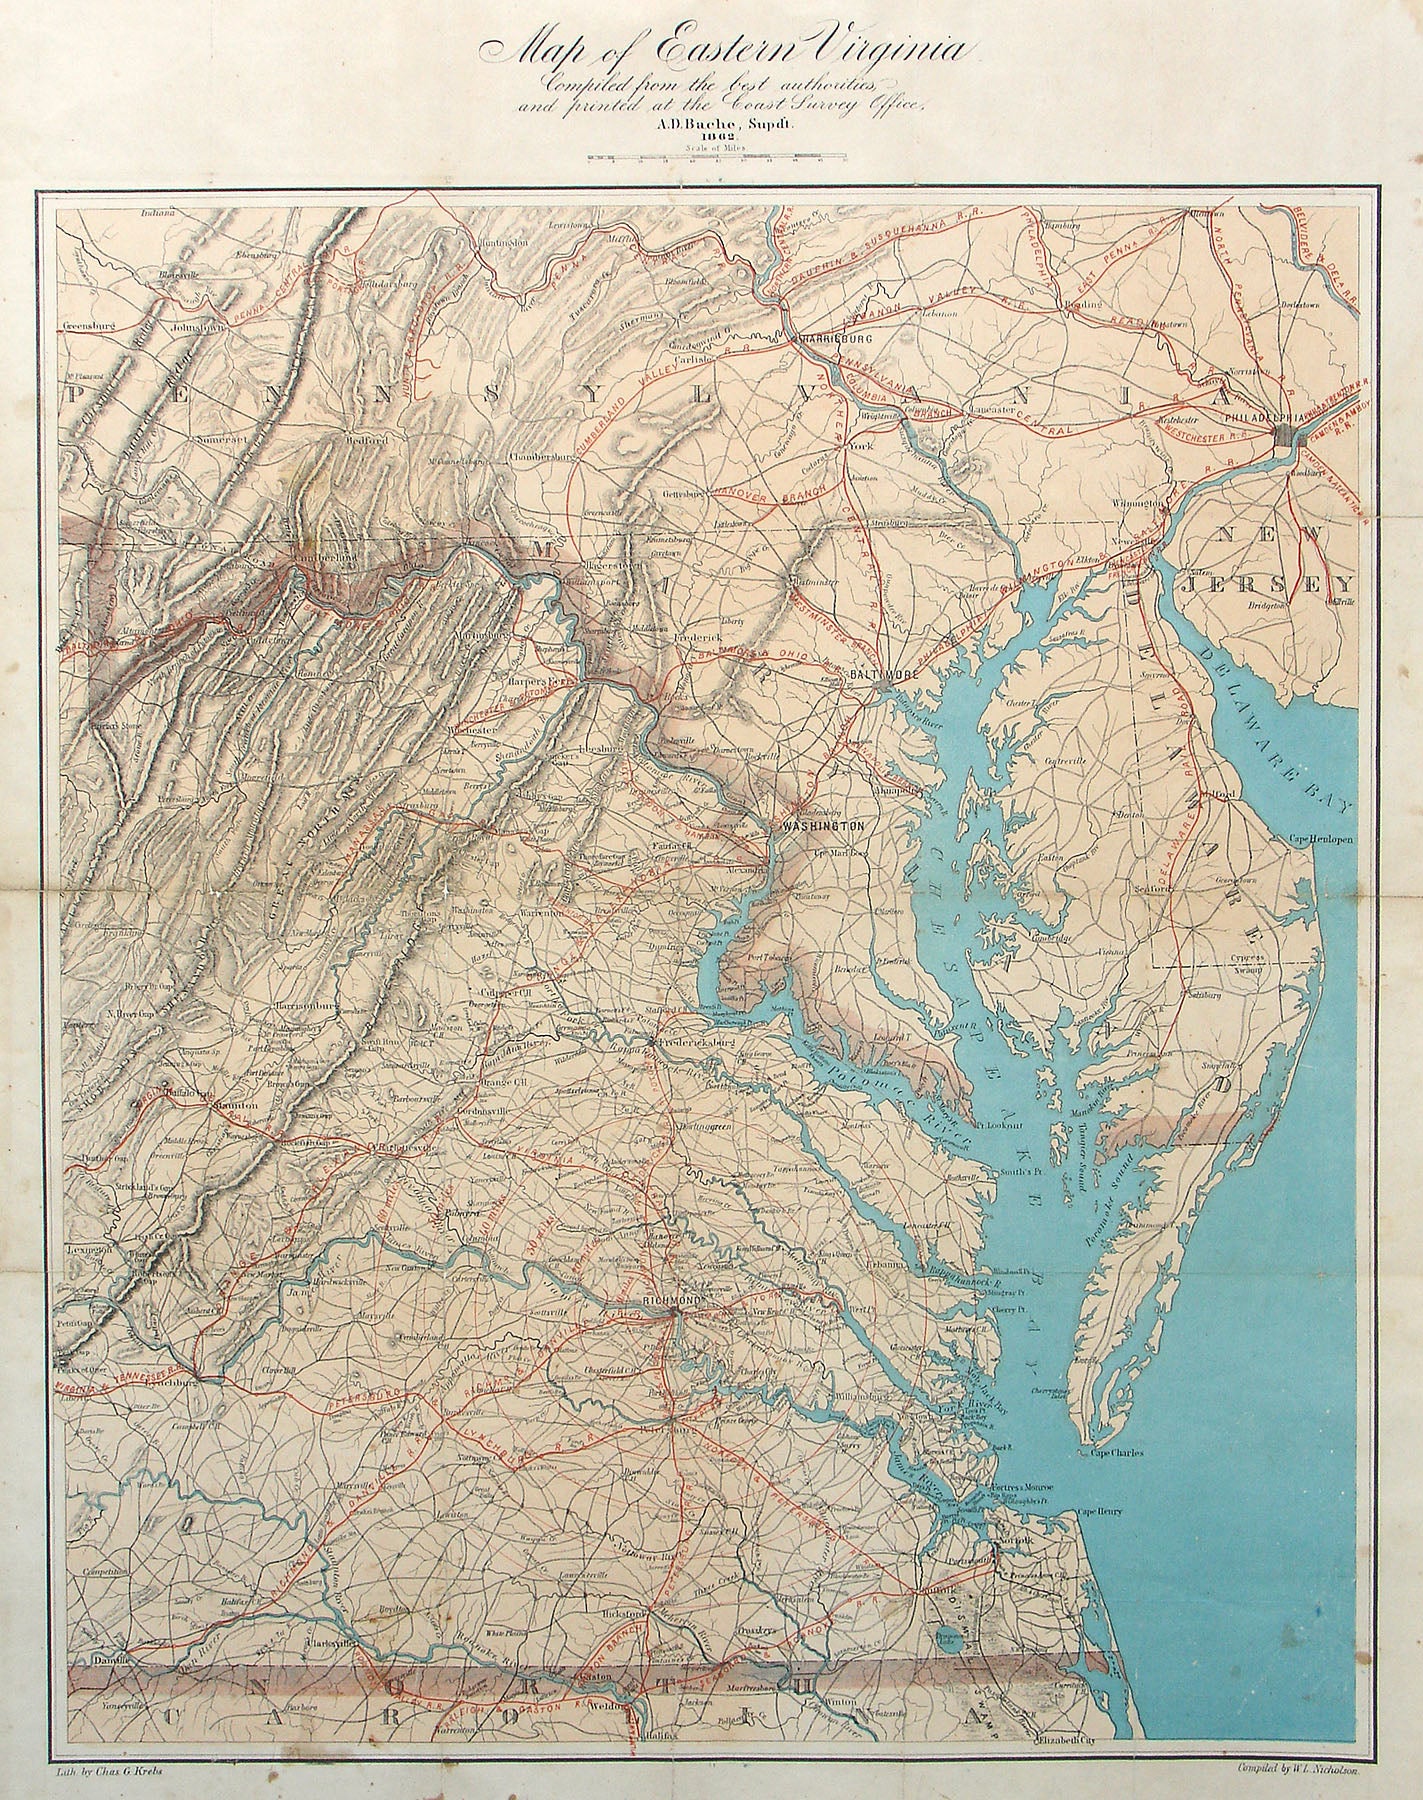 (VA.-Civil War) Map of Eastern Virginia